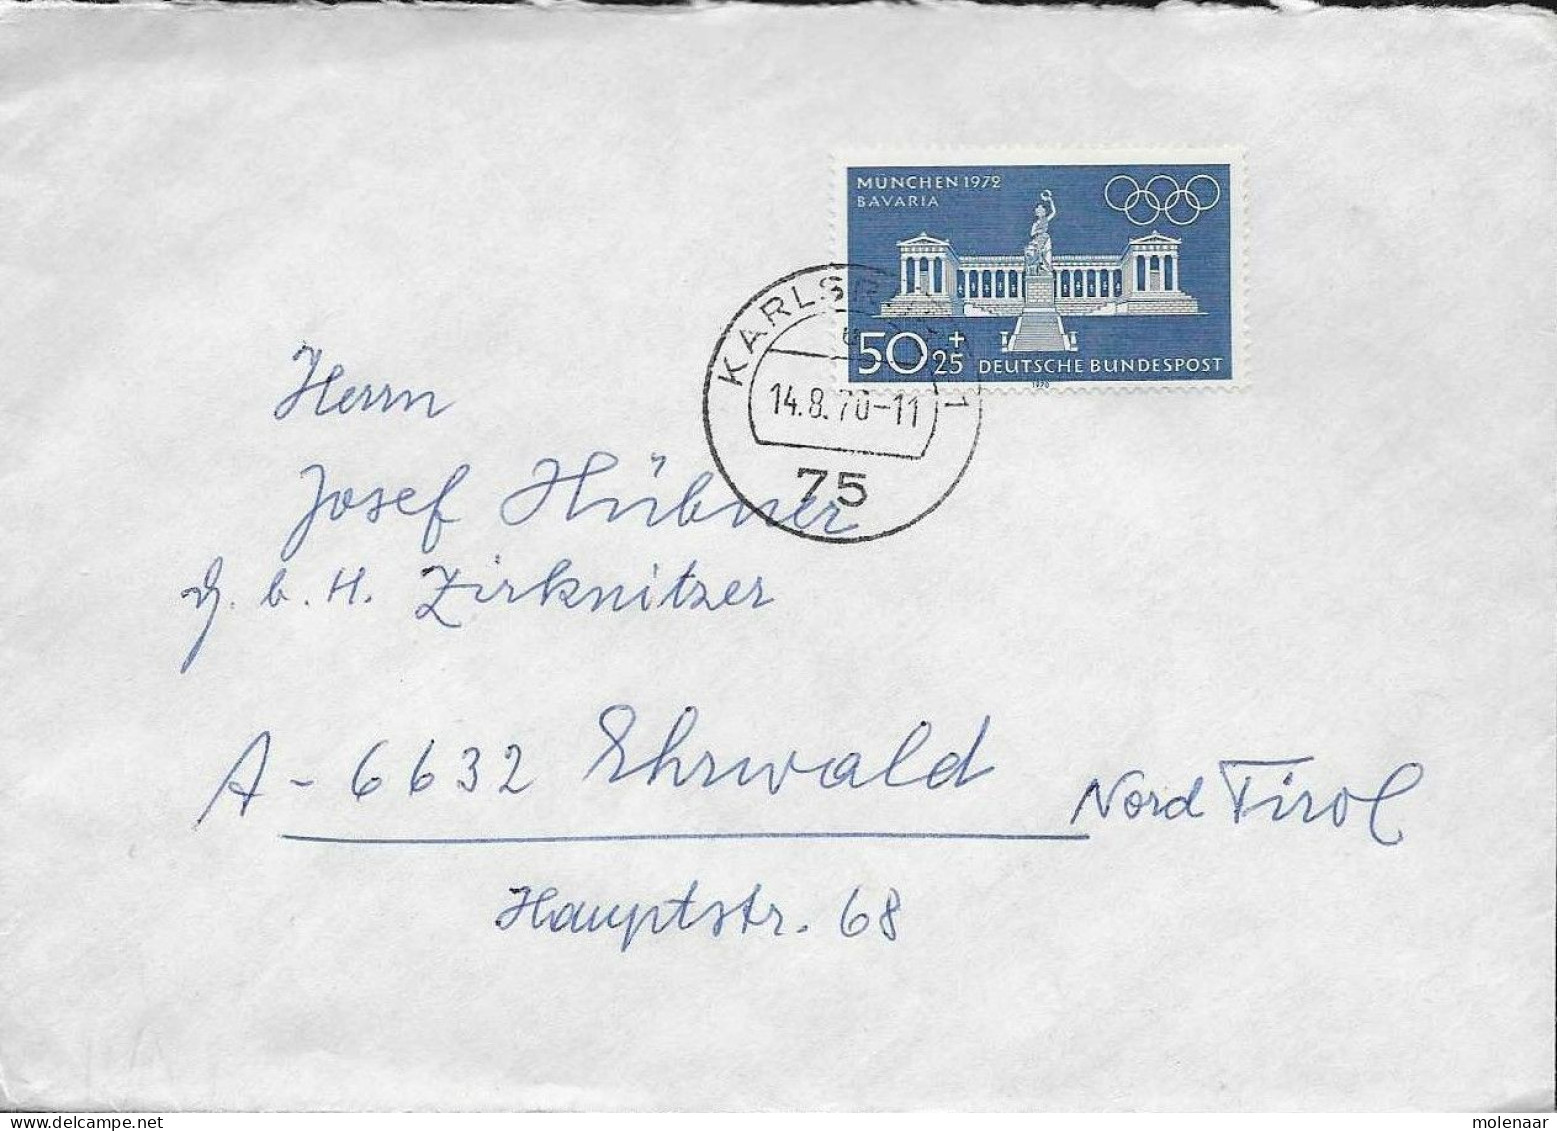 Postzegels > Europa > Duitsland > West-Duitsland > 1960-1969 > Brief Met No. 627 (17144) - Briefe U. Dokumente